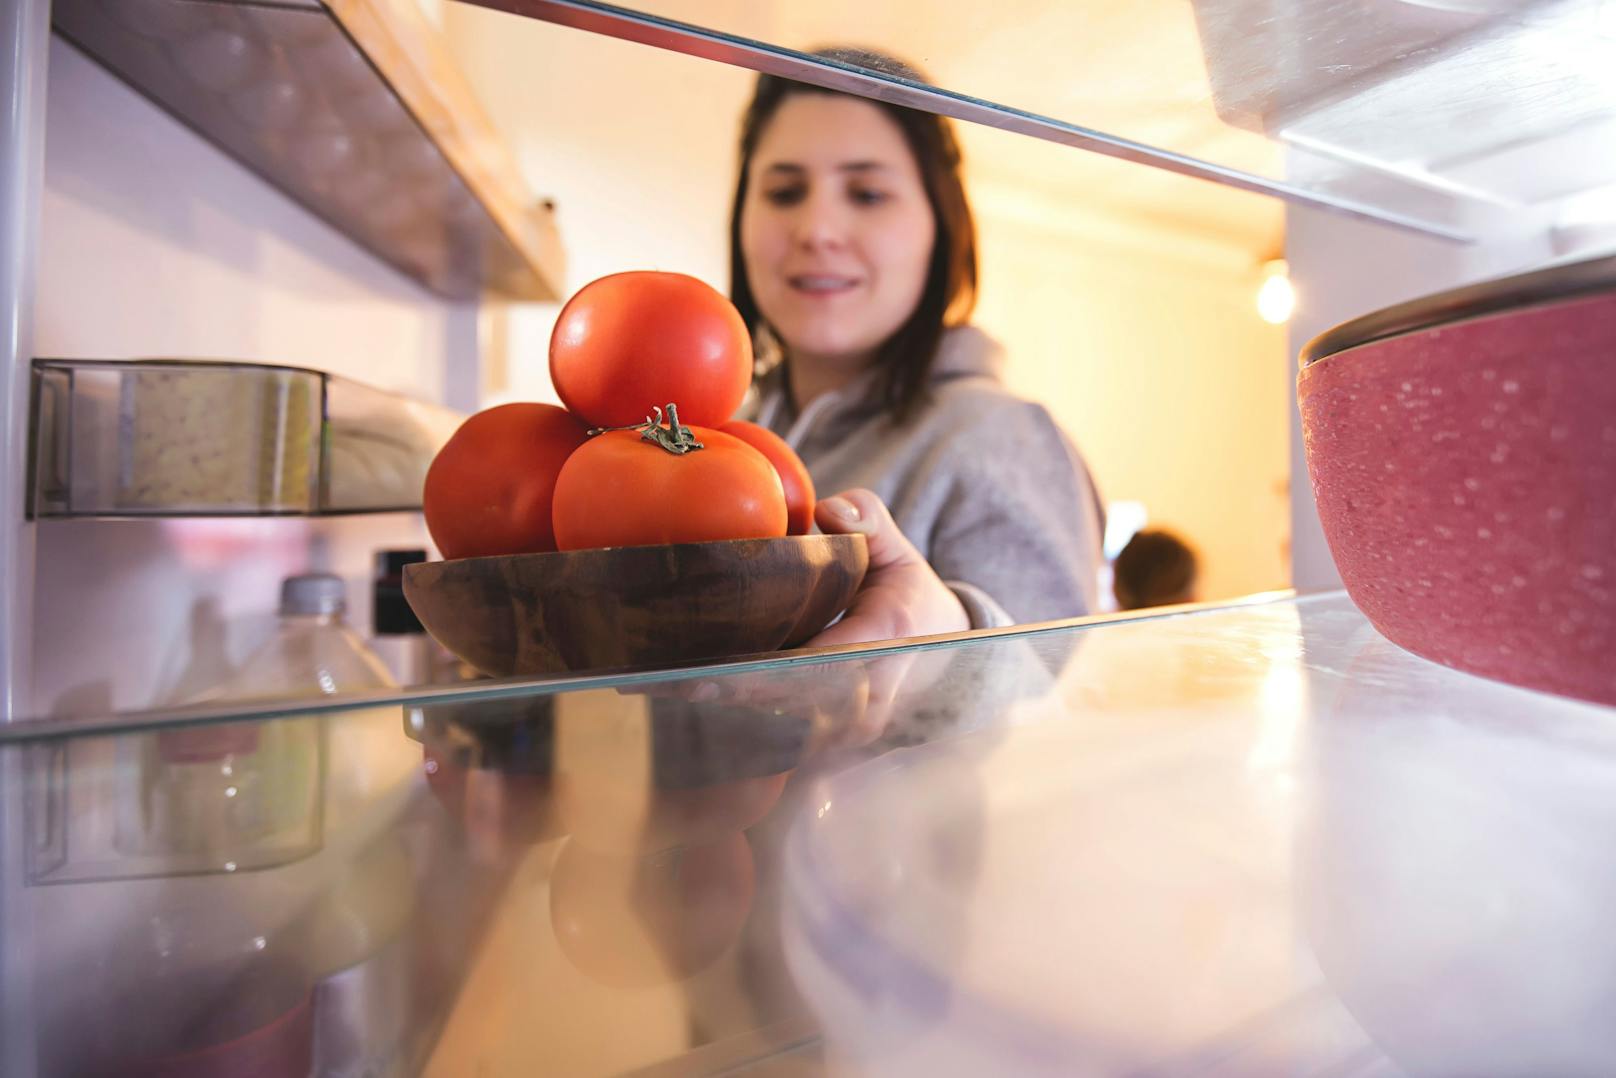 Da wasserhaltiges Gemüse kälteempfindlich ist, kann es im Kühlschrank seinen Geschmack verlieren.